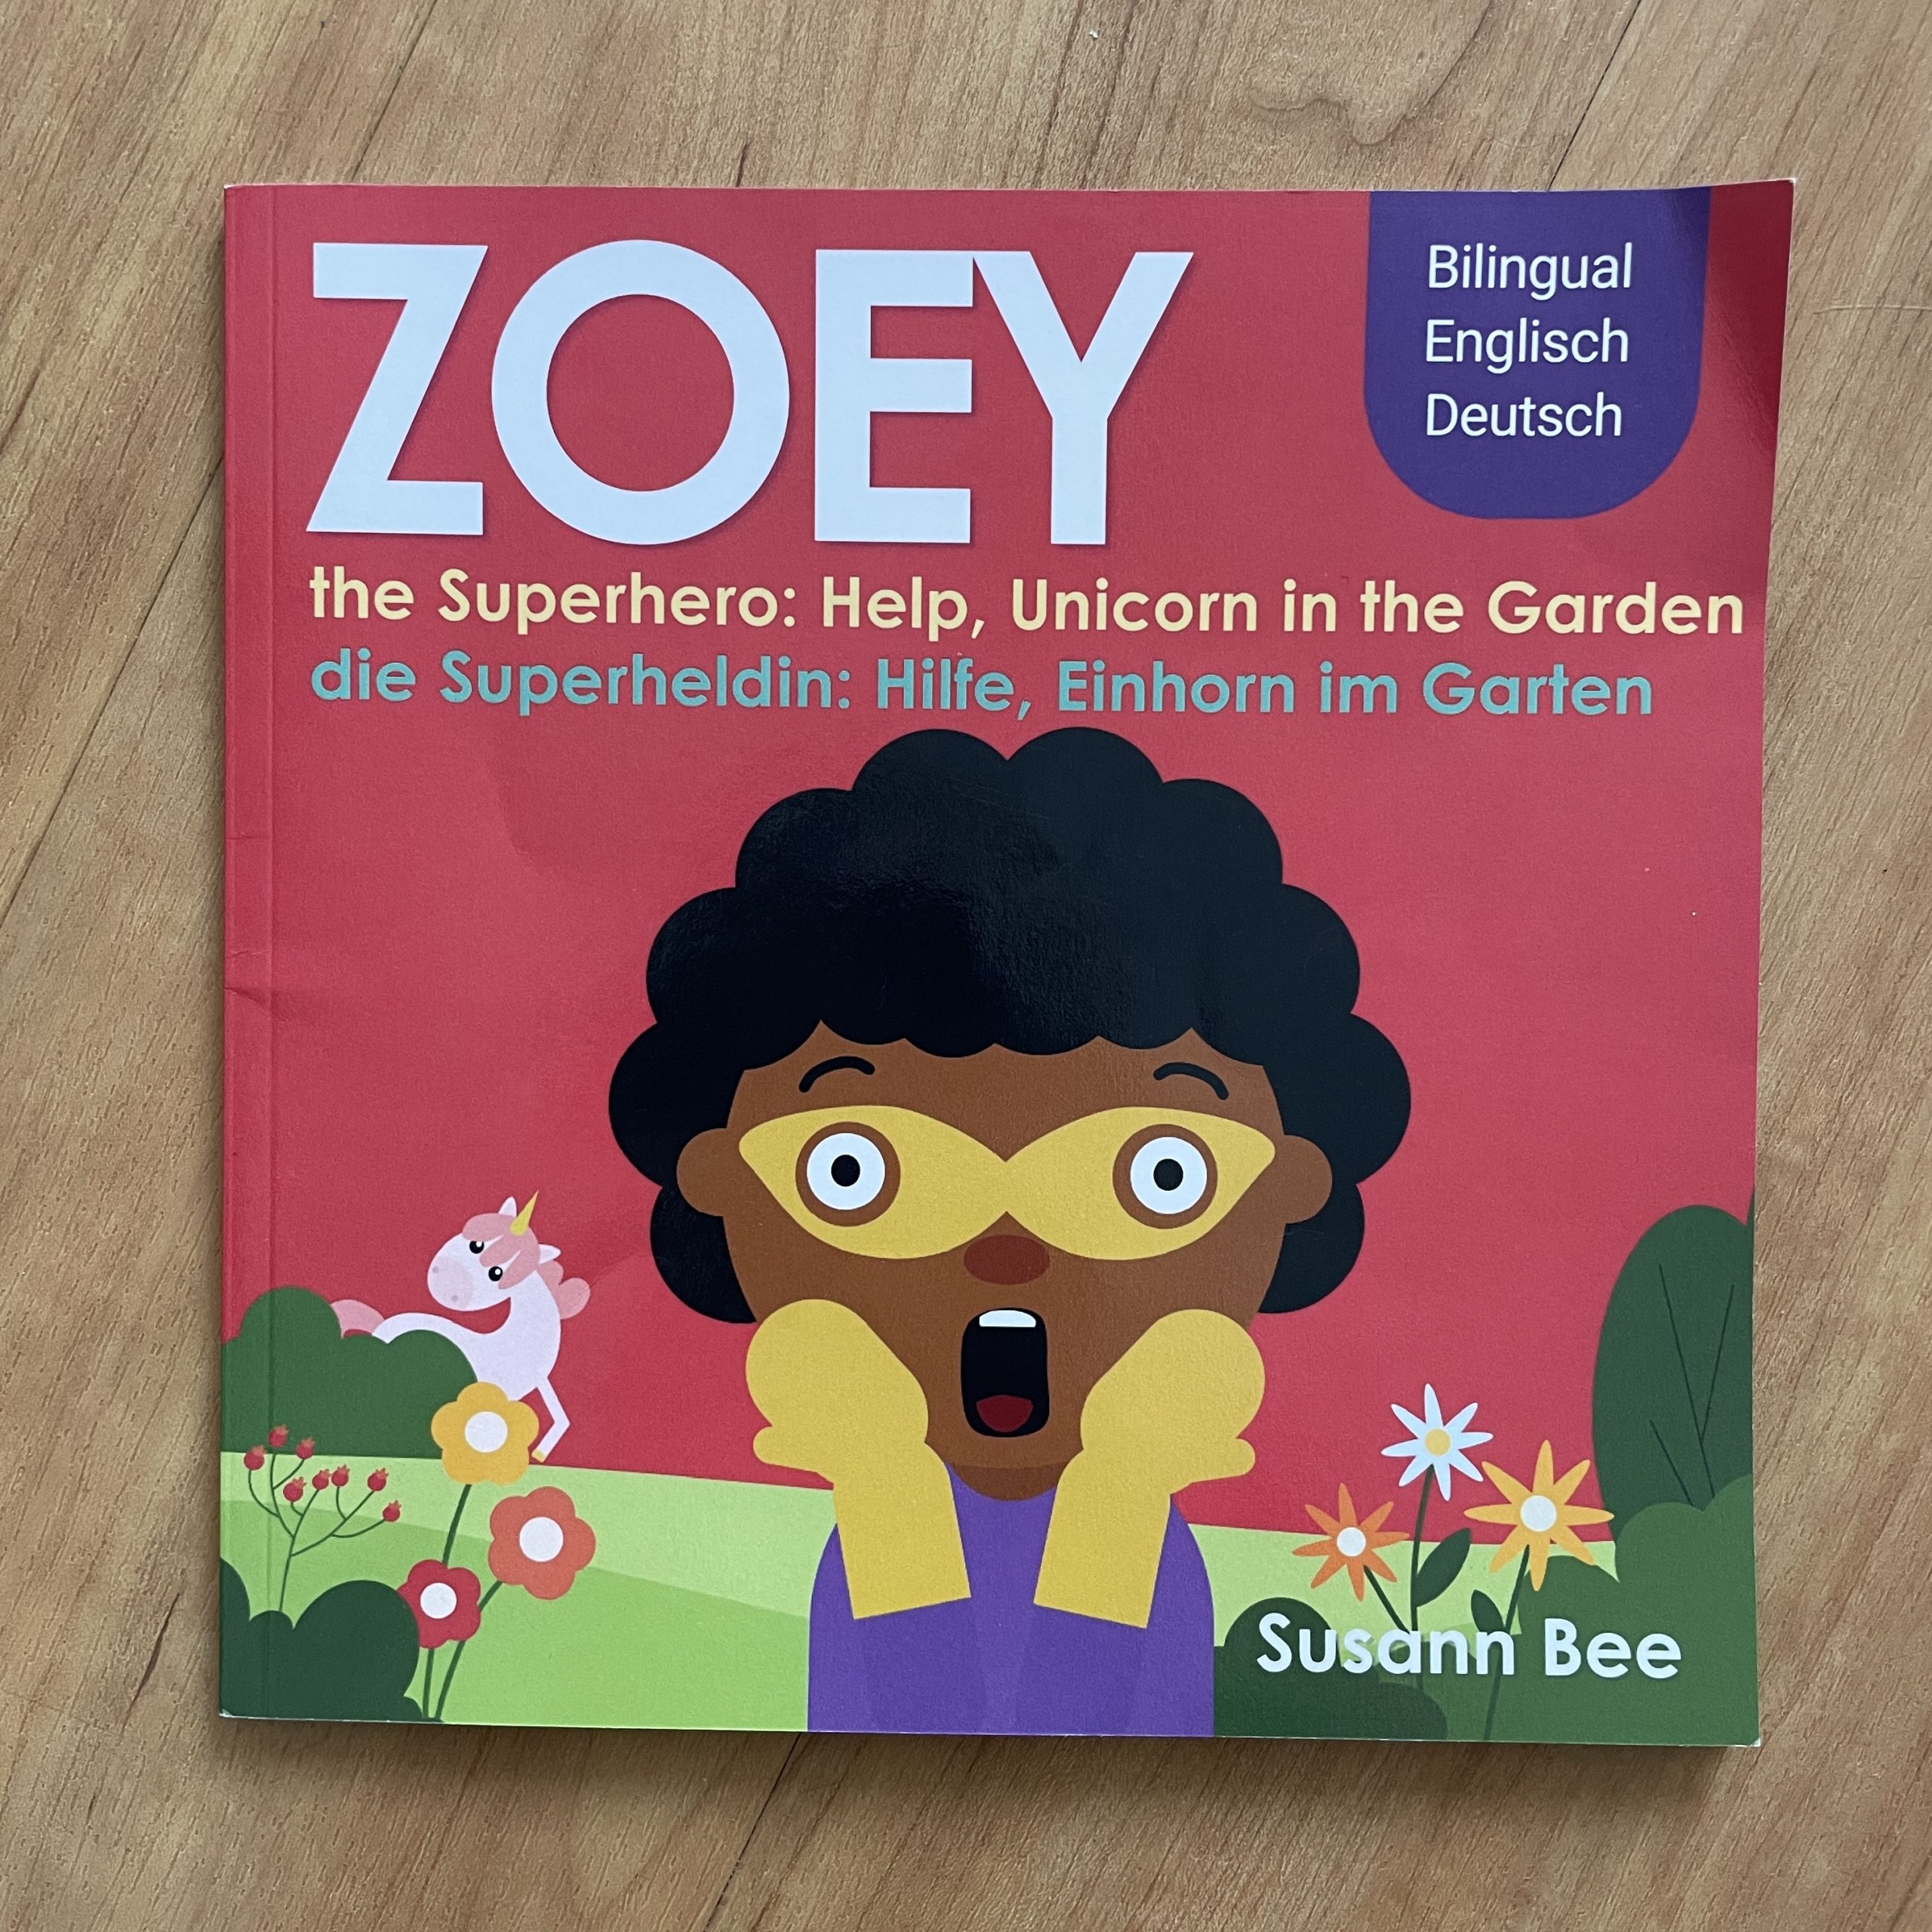 Zoey die Superheldin: Hilfe, Einhorn im Garten